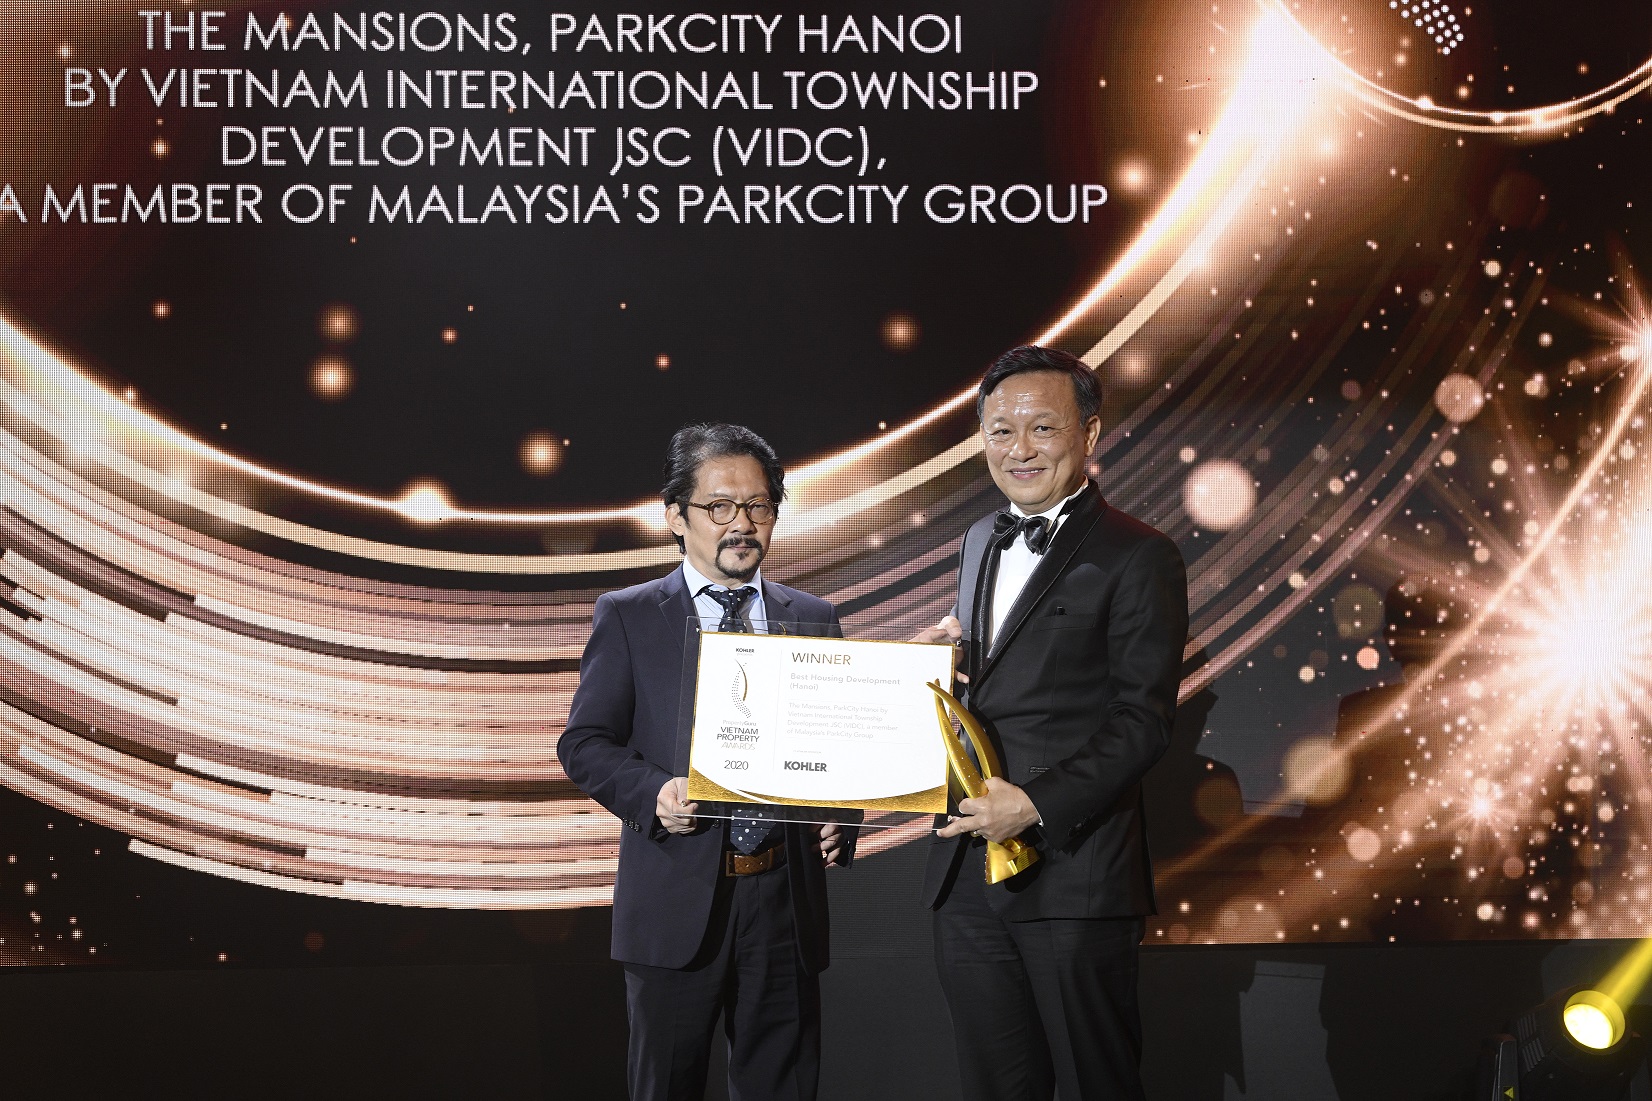 The Mansions, ParkCity Hanoi giành giải thưởng danh giá tại PropertyGuru Vietnam Property Awards 2020